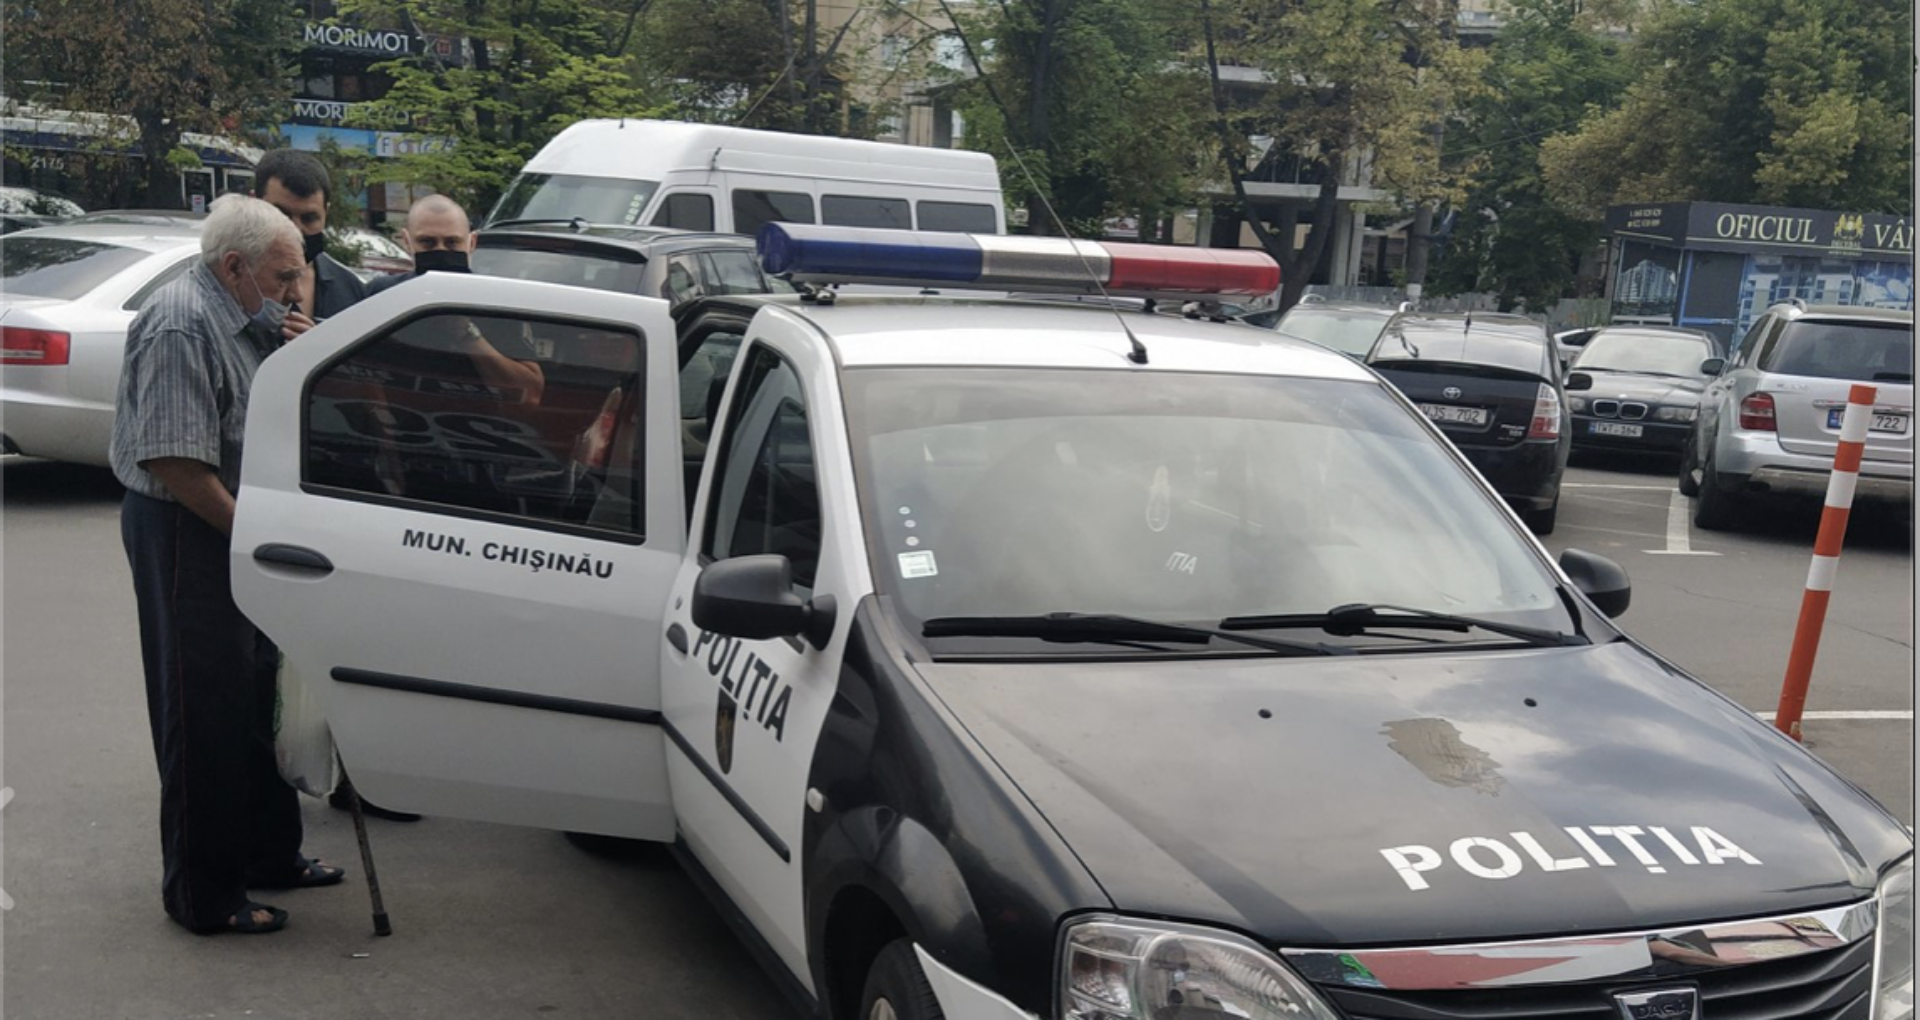 Un bărbat, în vârstă de 81 de ani, denunțat la poliție, după ce ar fi cumpărat mâncare pentru animale dintr-un magazin din Chișinău, la un preț mai mic față de costul real al acesteia